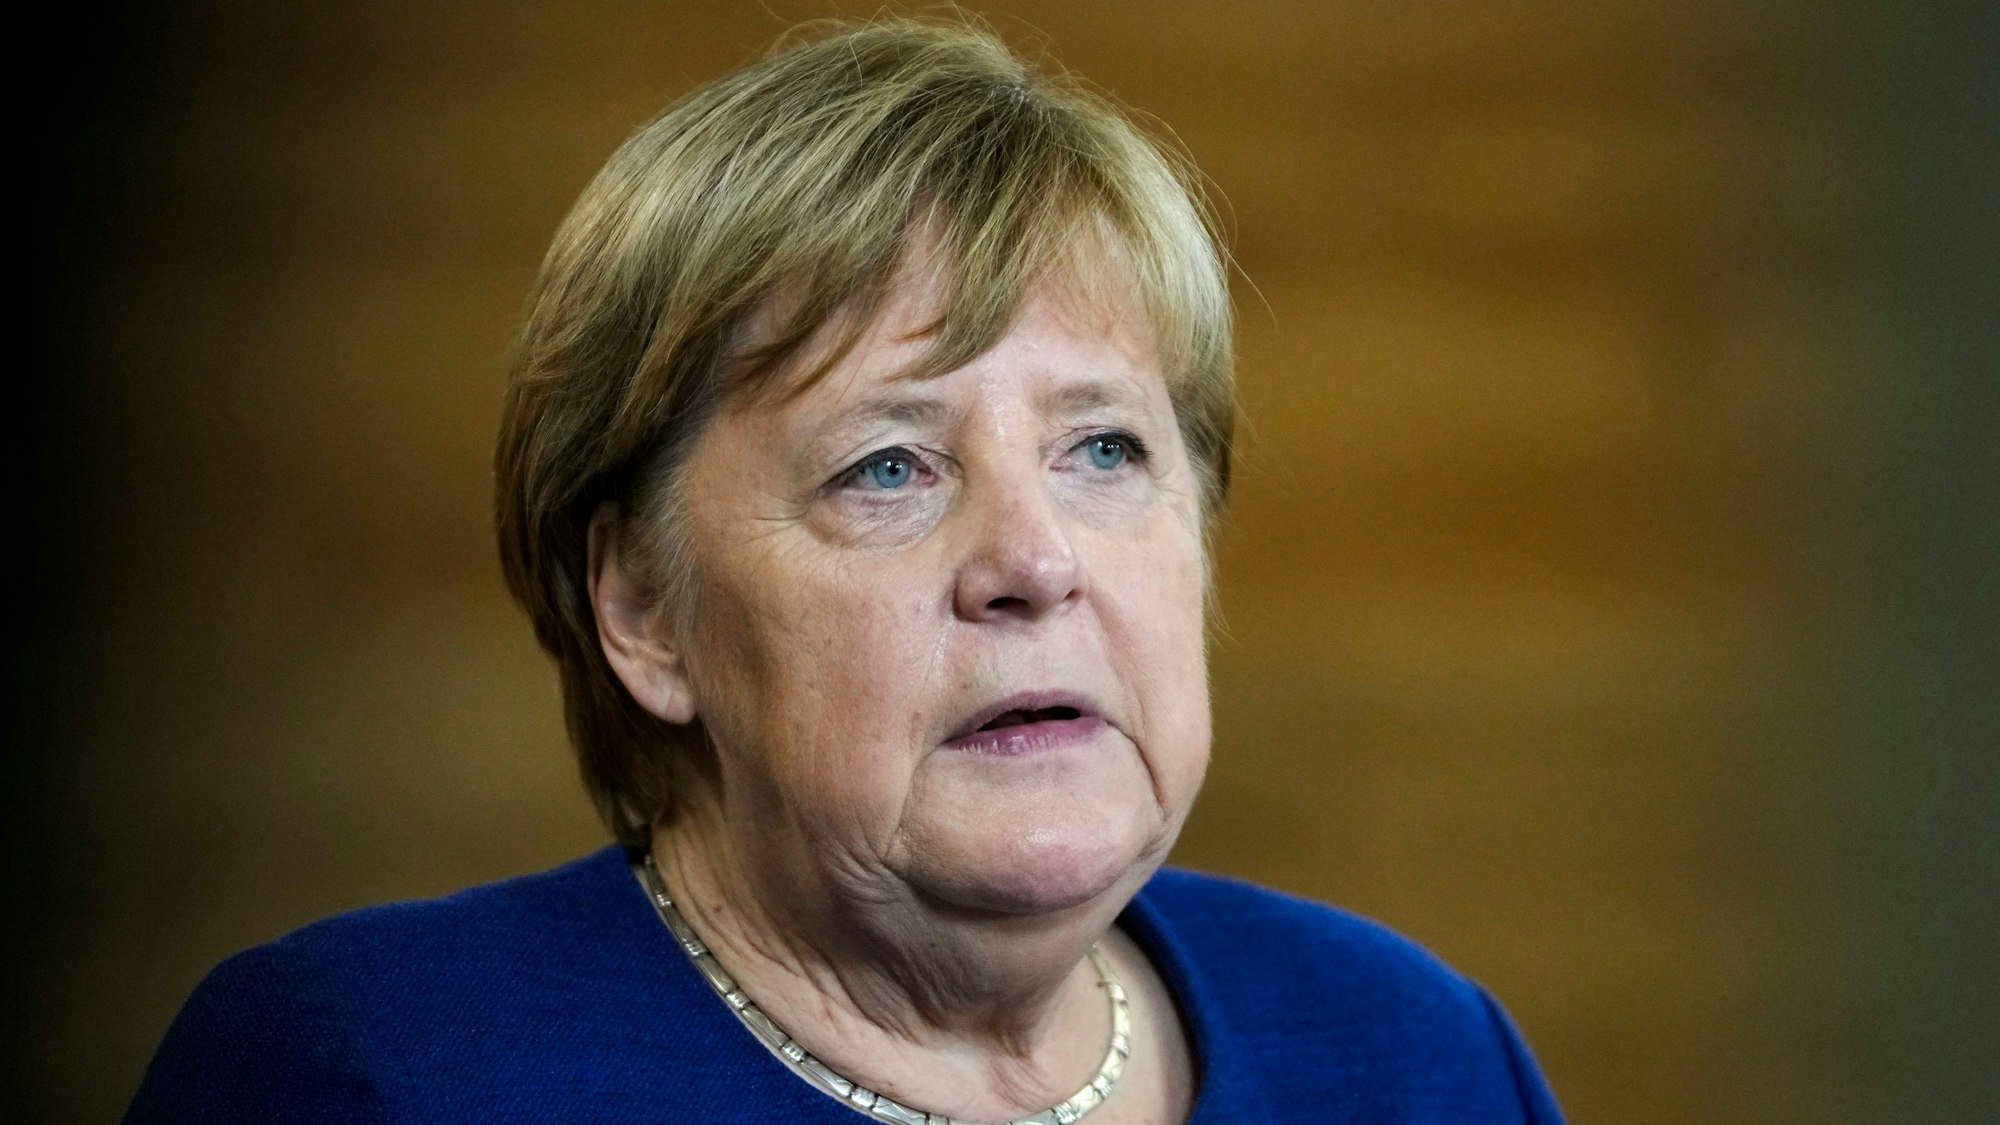 Die ehemalige Bundeskanzlerin Angela Merkel (CDU) spricht während einer Veranstaltung auf einer Bühne.